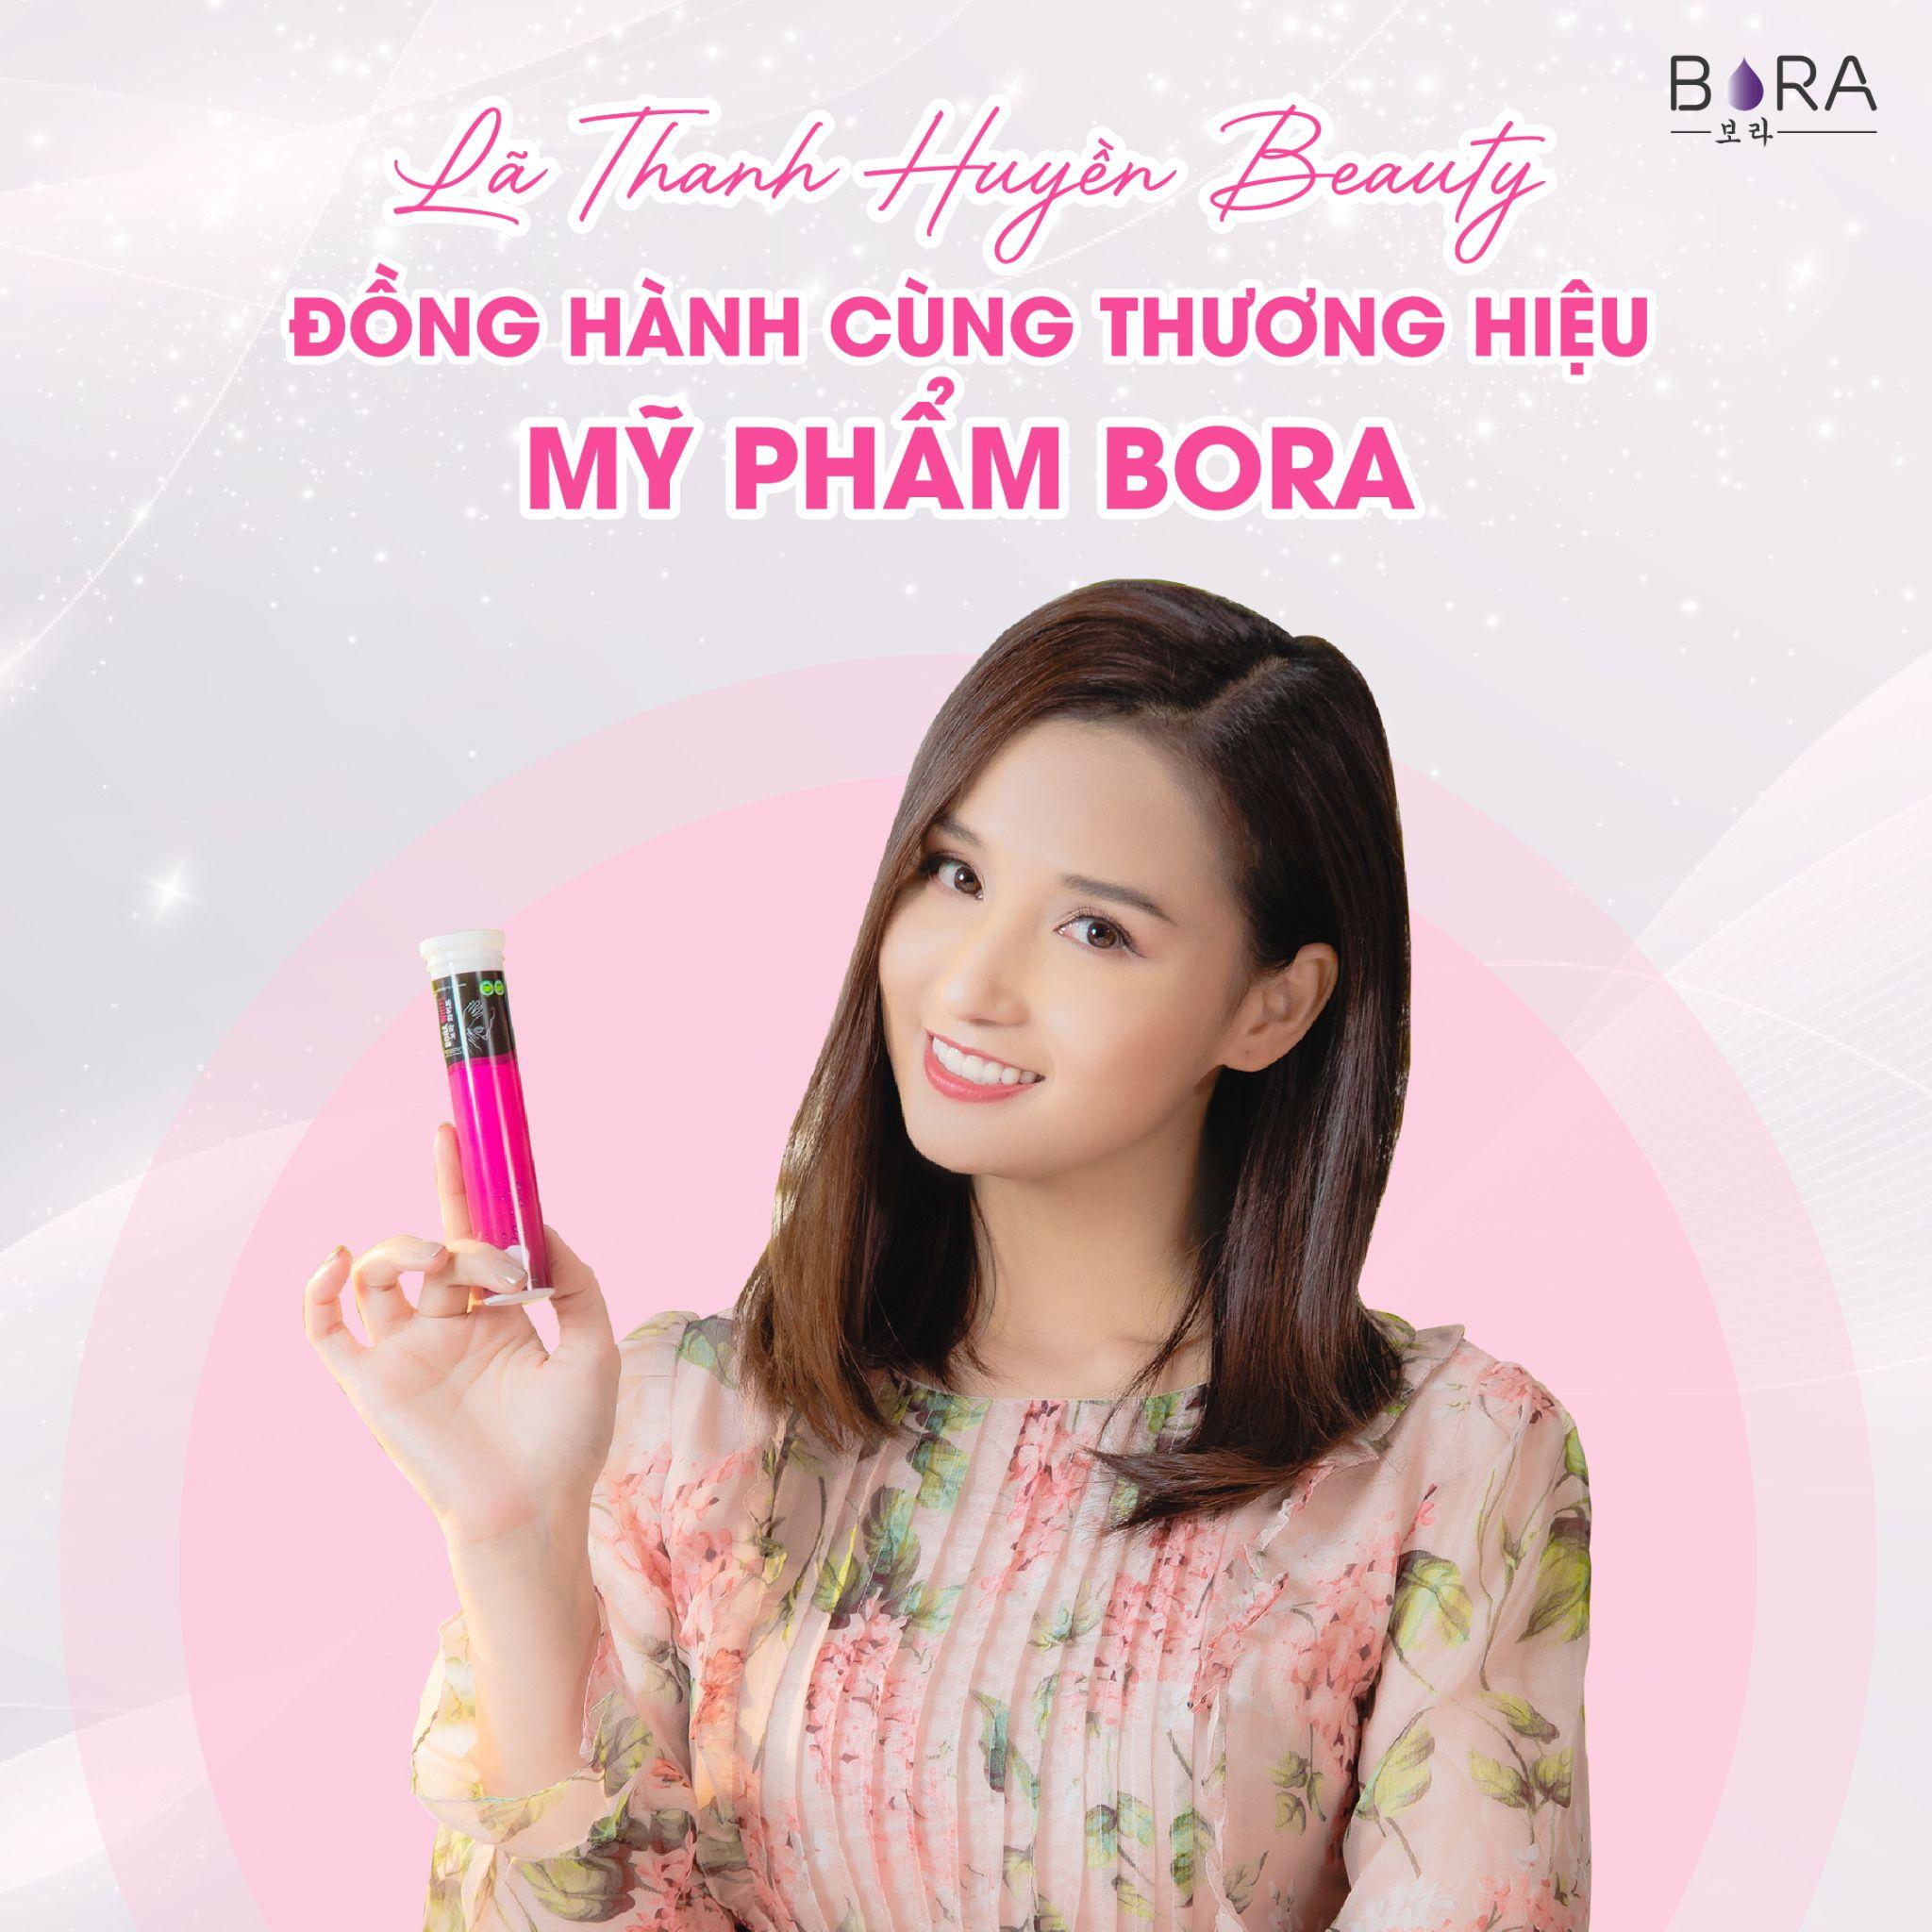 Sản phẩm - Dịch vụ - Lã Thanh Huyền Beauty - Hành trình mới nâng tầm thương hiệu mỹ phẩm Bora (Hình 2).